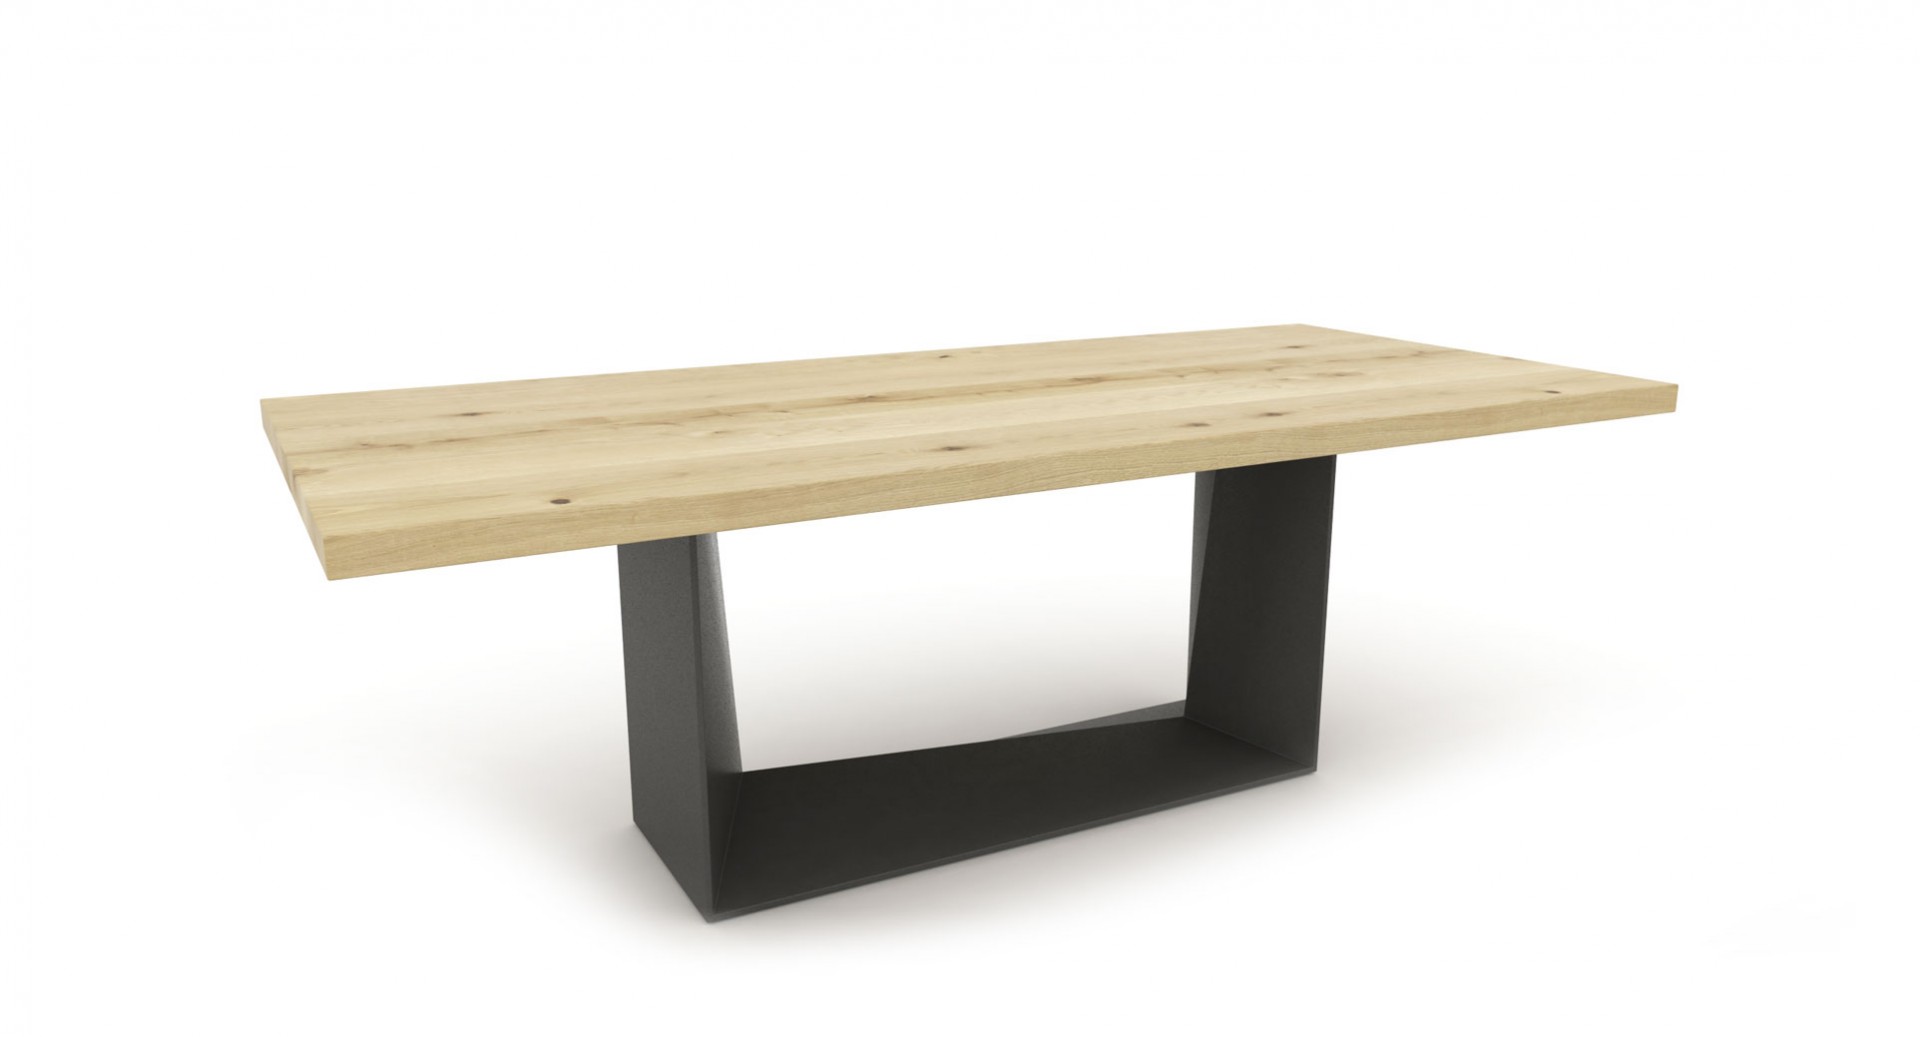 Jedálenský stôl MATE, masívny dub + čierna oceľ, jedálenský stôl z masívneho dreva, masívny dubový stôl, masívny drevený stôl cubica